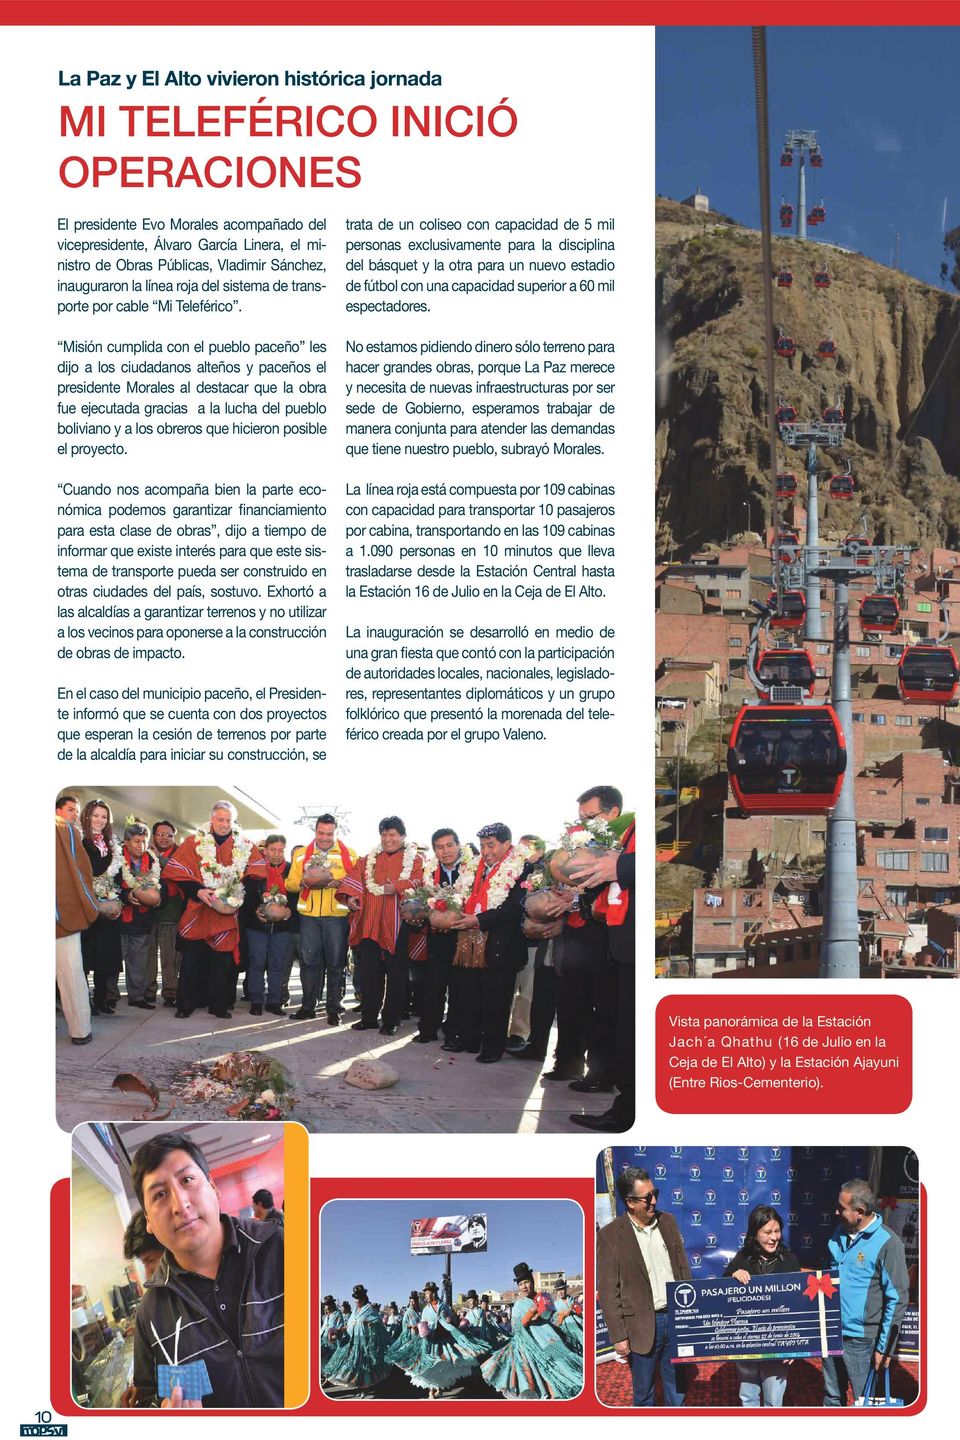 Misión cumplida con el pueblo paceño les dijo a los ciudadanos alteños y paceños el presidente Morales al destacar que la obra fue ejecutada gracias a la lucha del pueblo boliviano y a los obreros